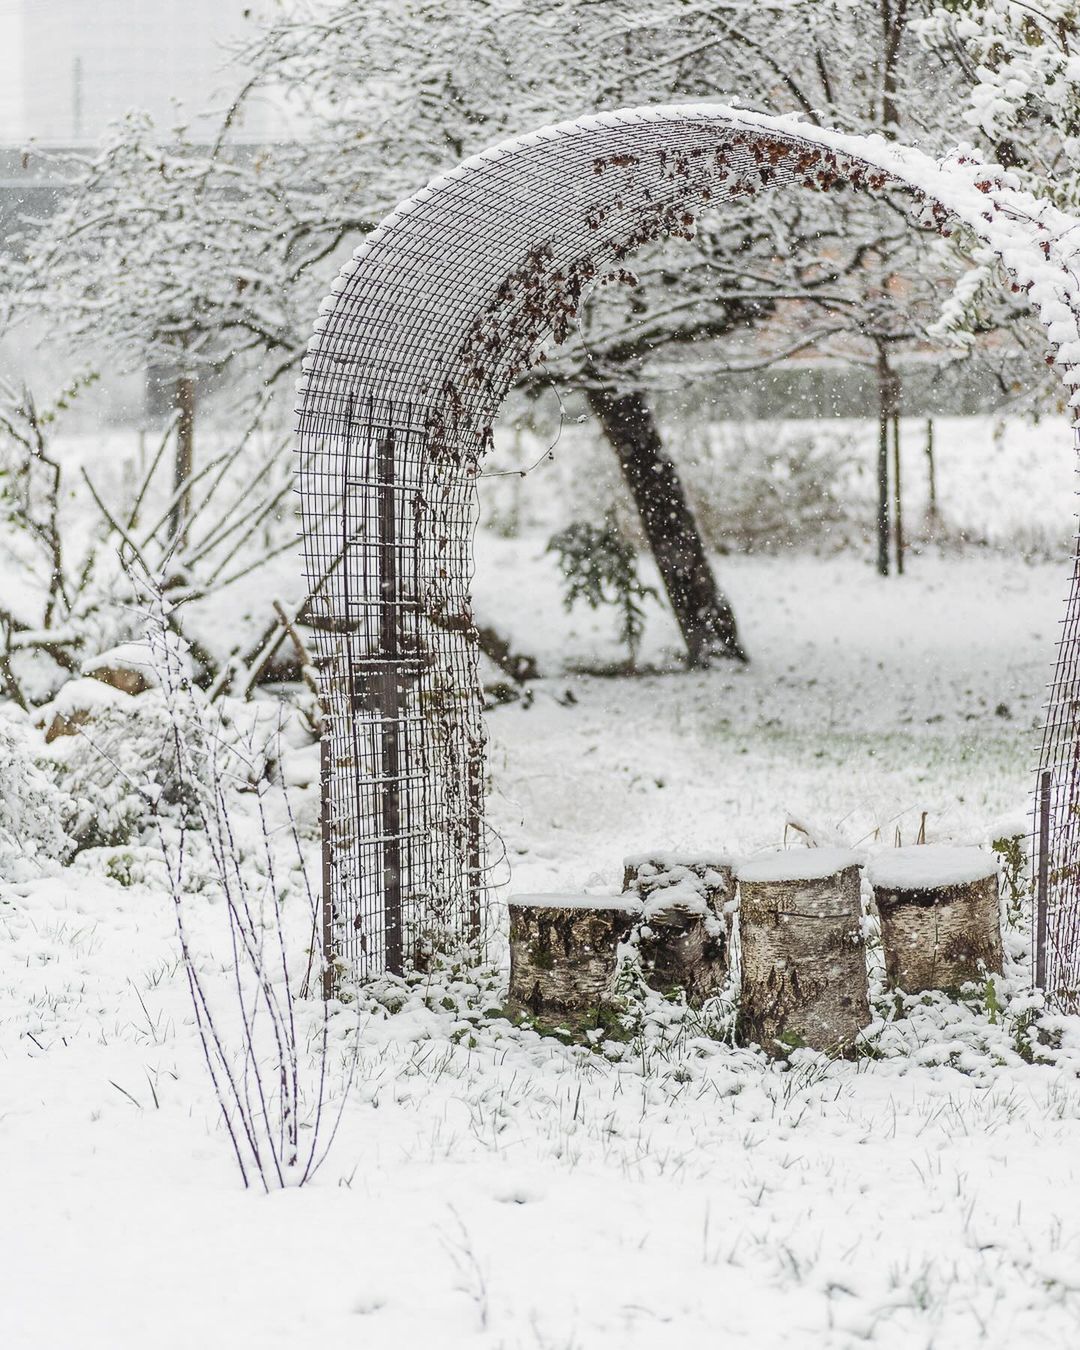 Der erste Schnee im Garten in diesem Winter :) gestern ist der Winter im Garten angekommen… die letzten Blüten blitzen noch ein wenig aus dem Schnee heraus. Wir freuen uns schon auf die ersten Frühblüher im neuen Jahr. Ein paar Zwiebeln werden noch vergraben werden…
.
#nachbarschaftsgarten #urbangardening #garten #gemeinschaftsgarten #zürichcity #seebach #urbanesgärtnern #städtischergarten #nachhaltigegärten #stadtgarten #wintergarden #wintergarten #schneeimgarten #derersteschnee #snowgarden